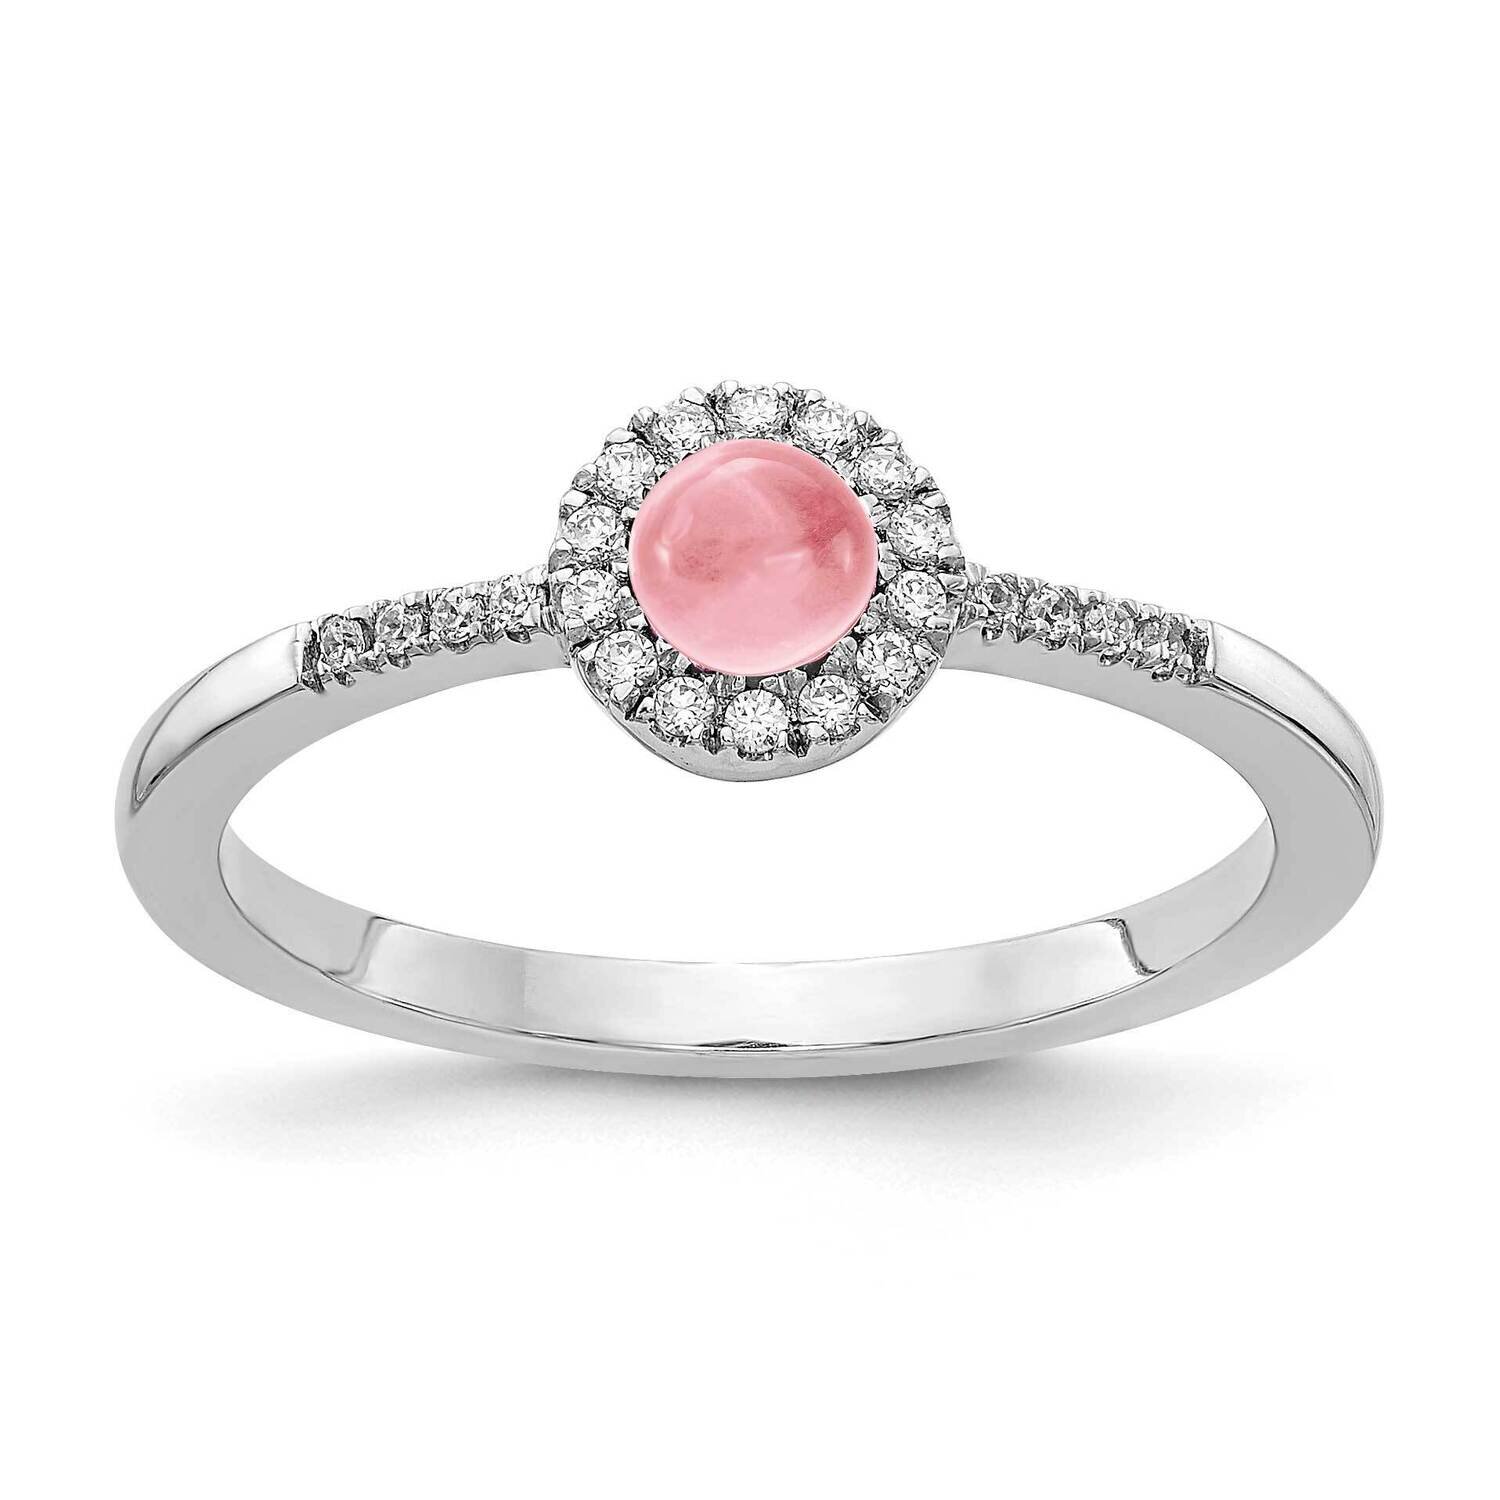 Cabochon Pink Tourmaline Ring 14k White Gold Diamond RM4031-PT-025-WA